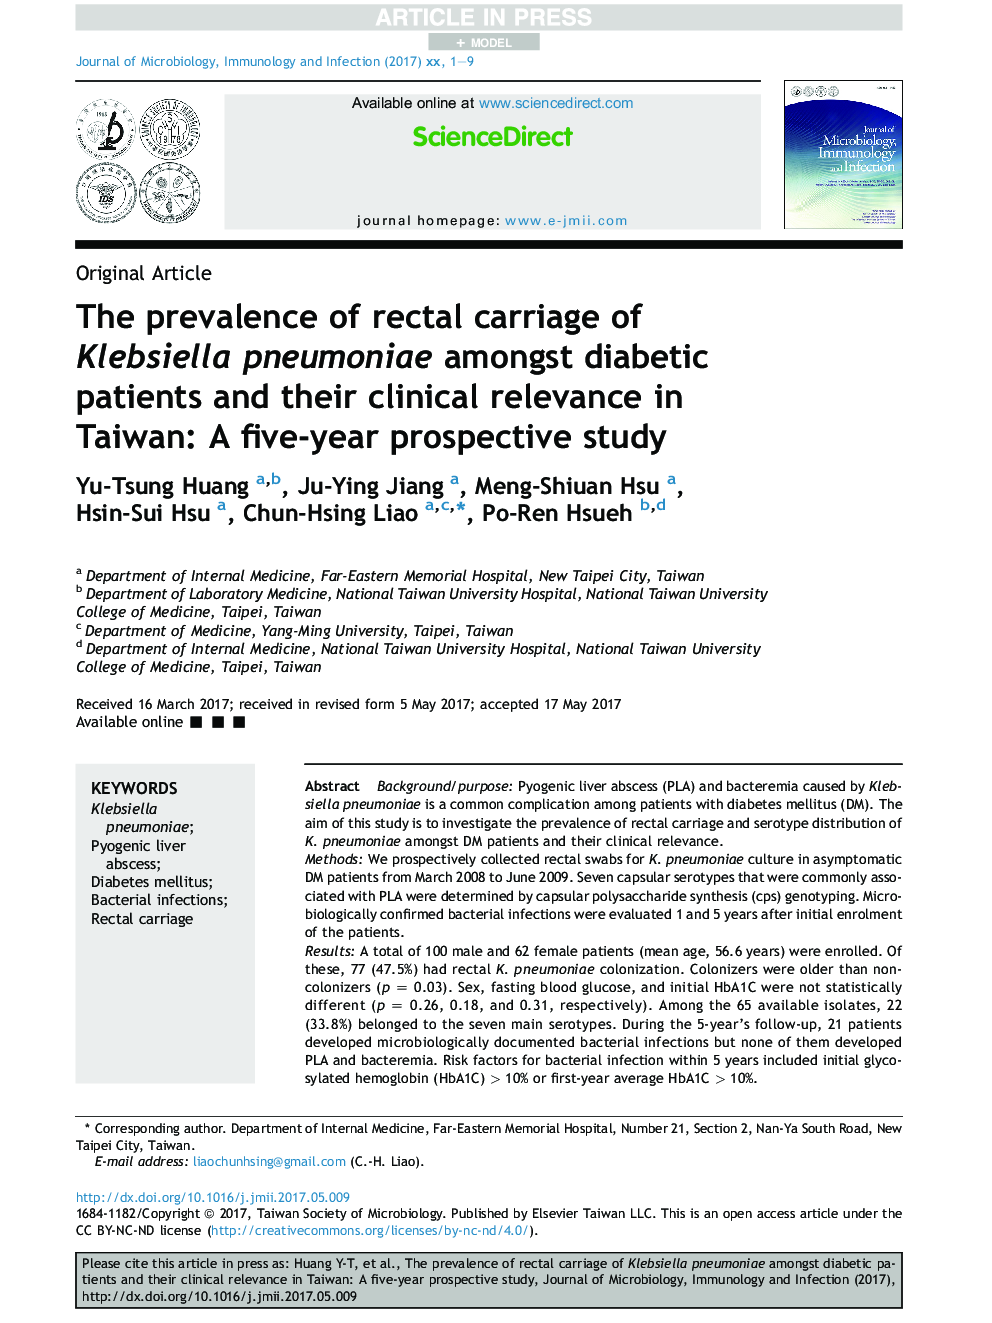 شیوع حمل واکسن کلبسیلا پنومونیه در بیماران دیابتی و ارتباط بالینی آنها در تایوان: یک مطالعه آینده نگر پنج ساله 